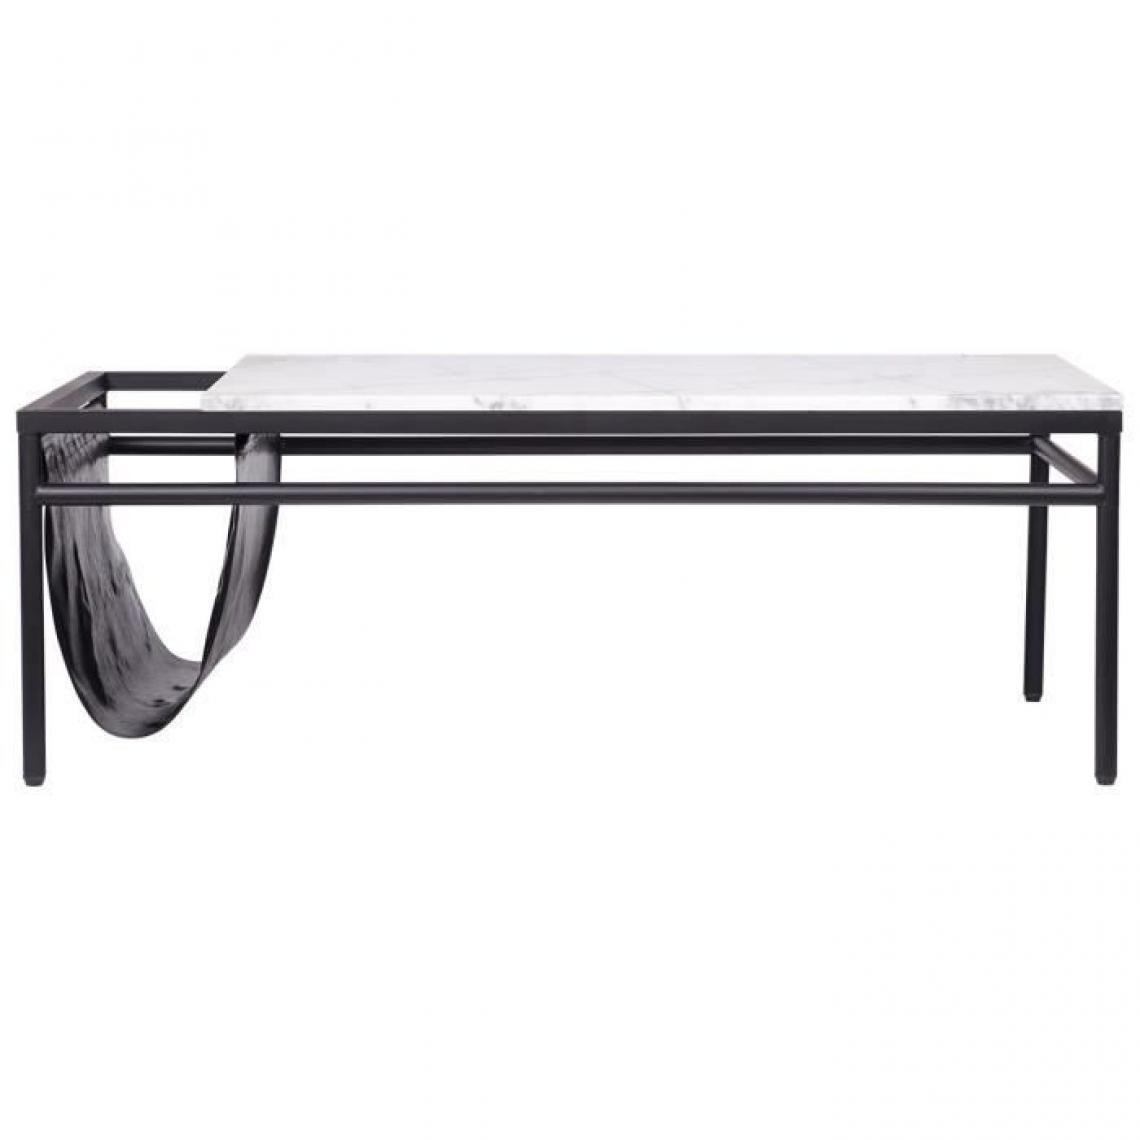 Cstore - Table basse rectangulaire - avec range magazine intégré - décors marbre et pieds métal noir - L 120 x l 60 x H43 cm - MARCO - Tables basses